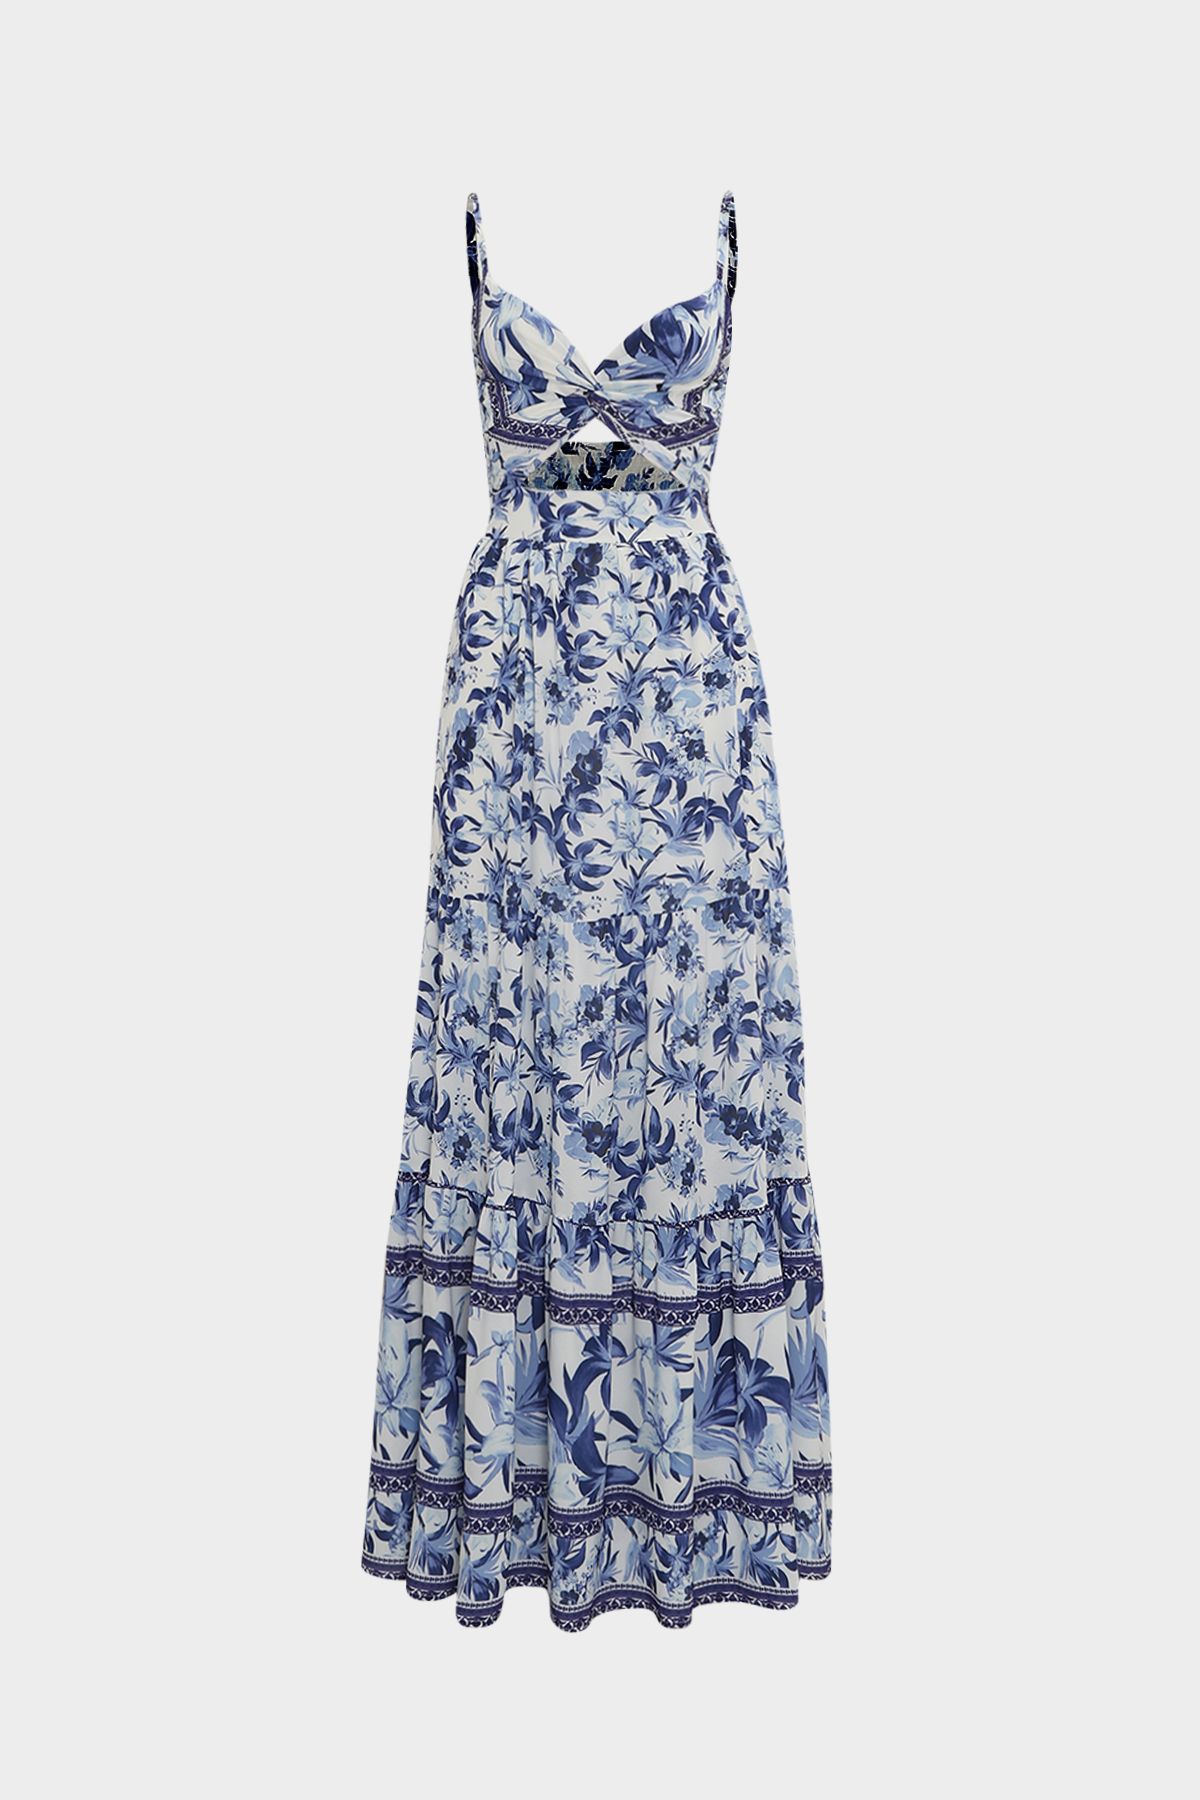 Açelya Okcu Premium Sırtı Gipe Detaylı Cut Out Çiçek Desenli Maksi Kadın Elbise